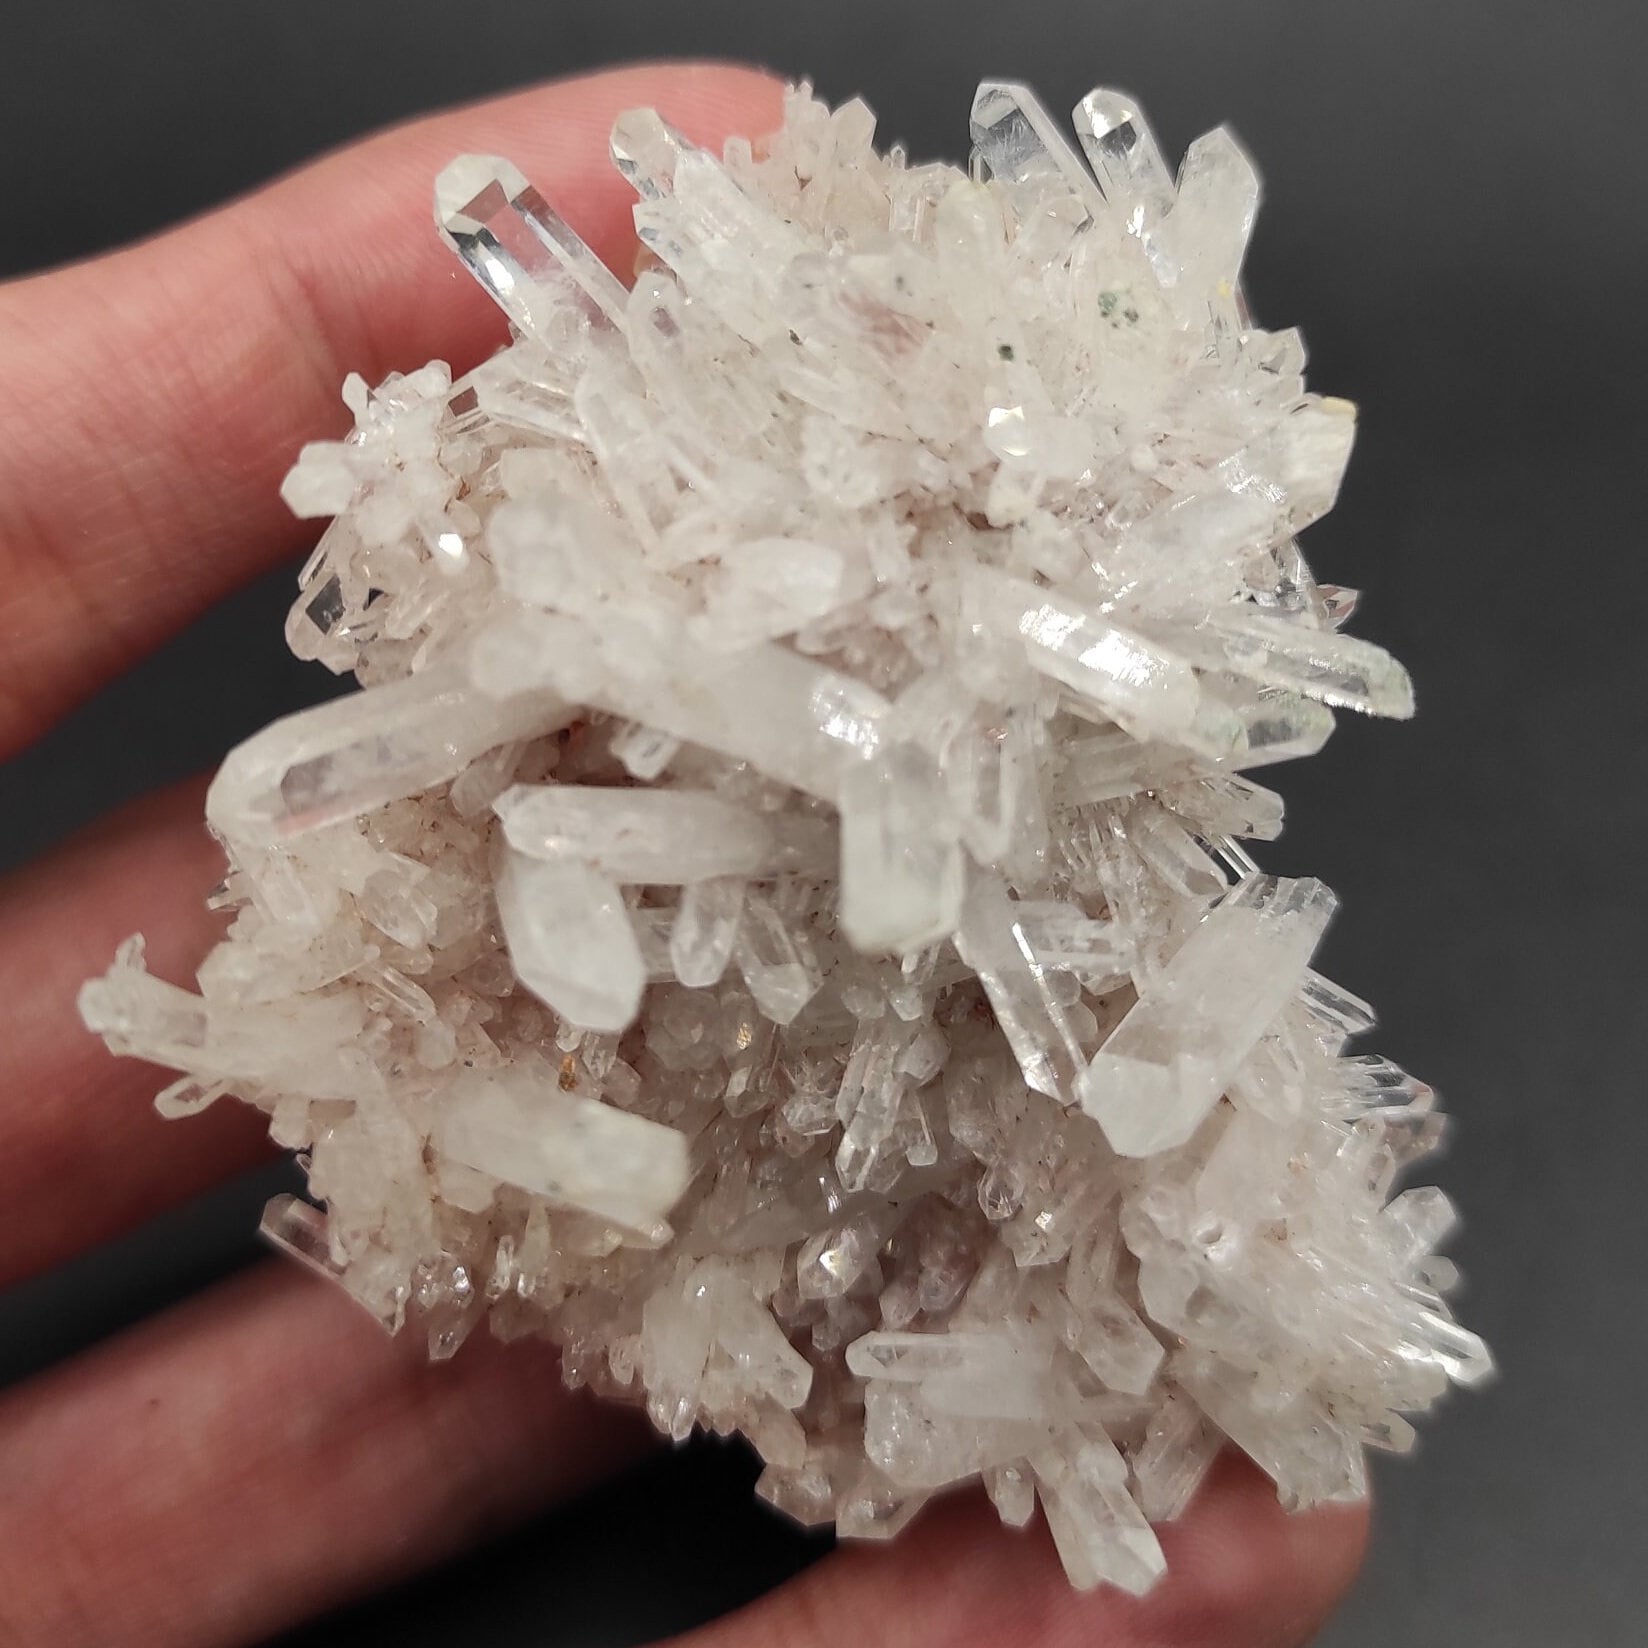 77g Clear Quartz Crystal Specimen - Clear Quartz Cluster from Belleza, Colombia - Quartz Crystals - Raw Quartz